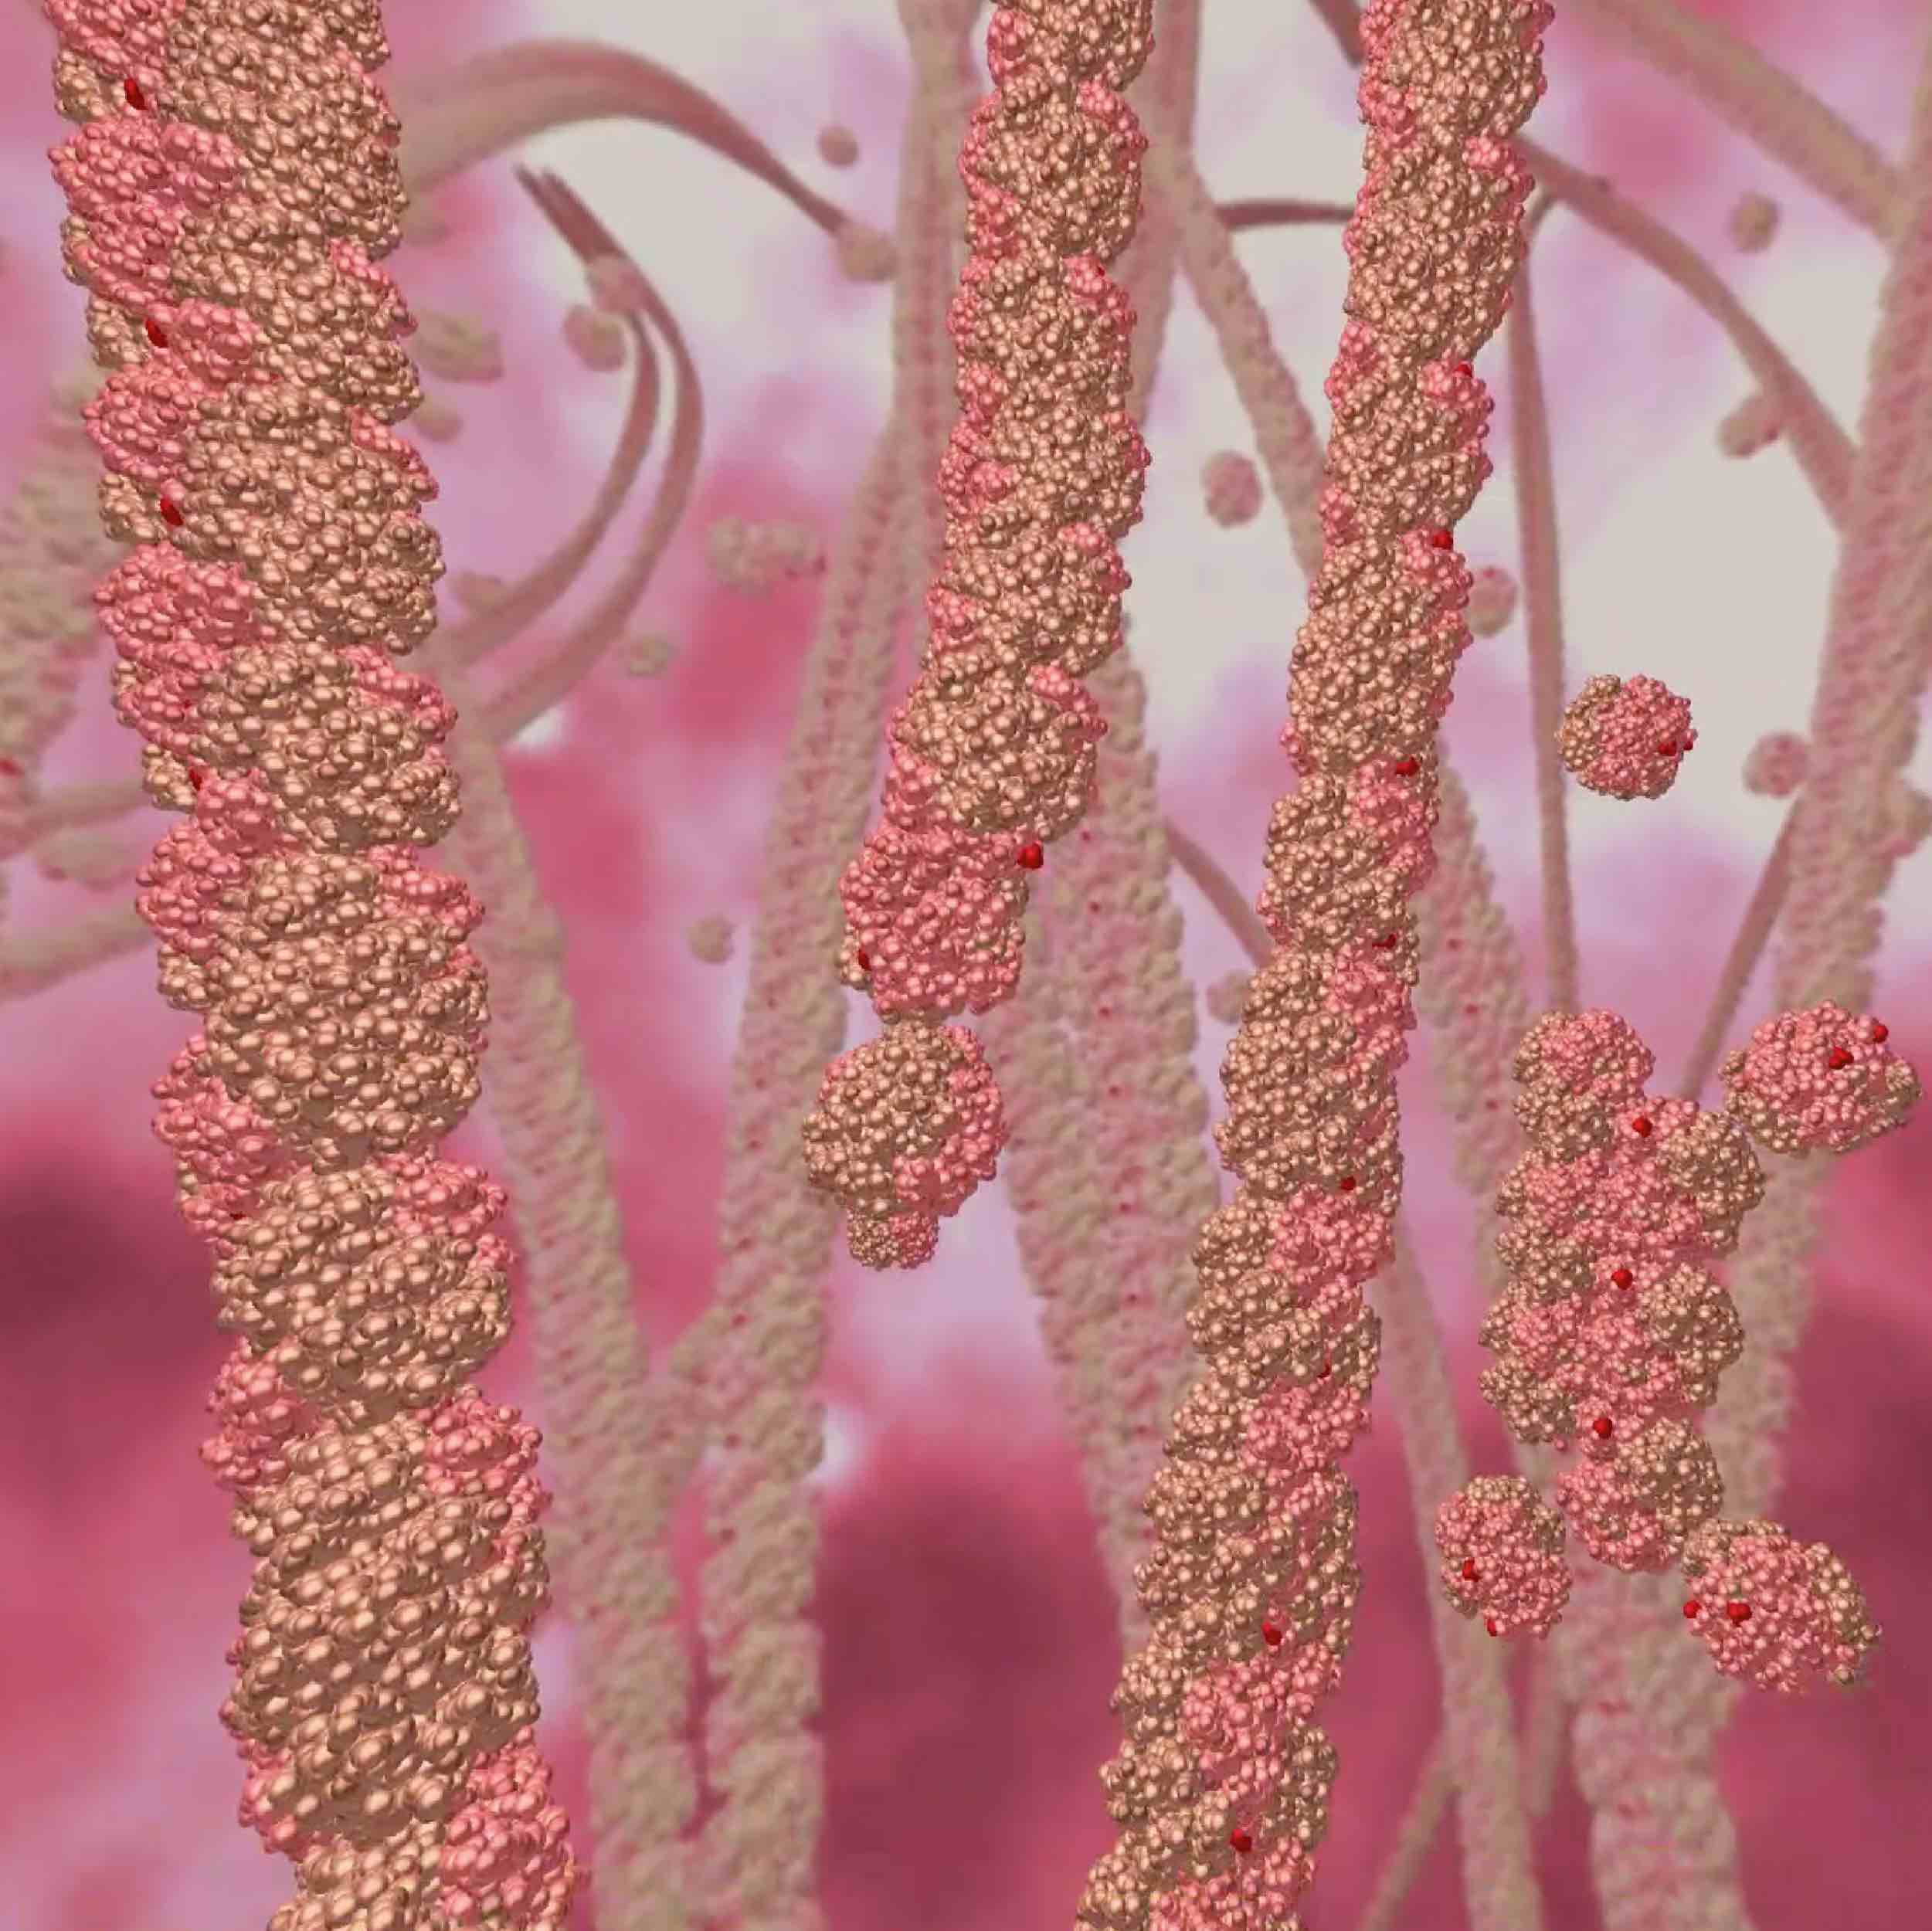 在镰状红细胞中形成纤维的突变血红蛋白的图示